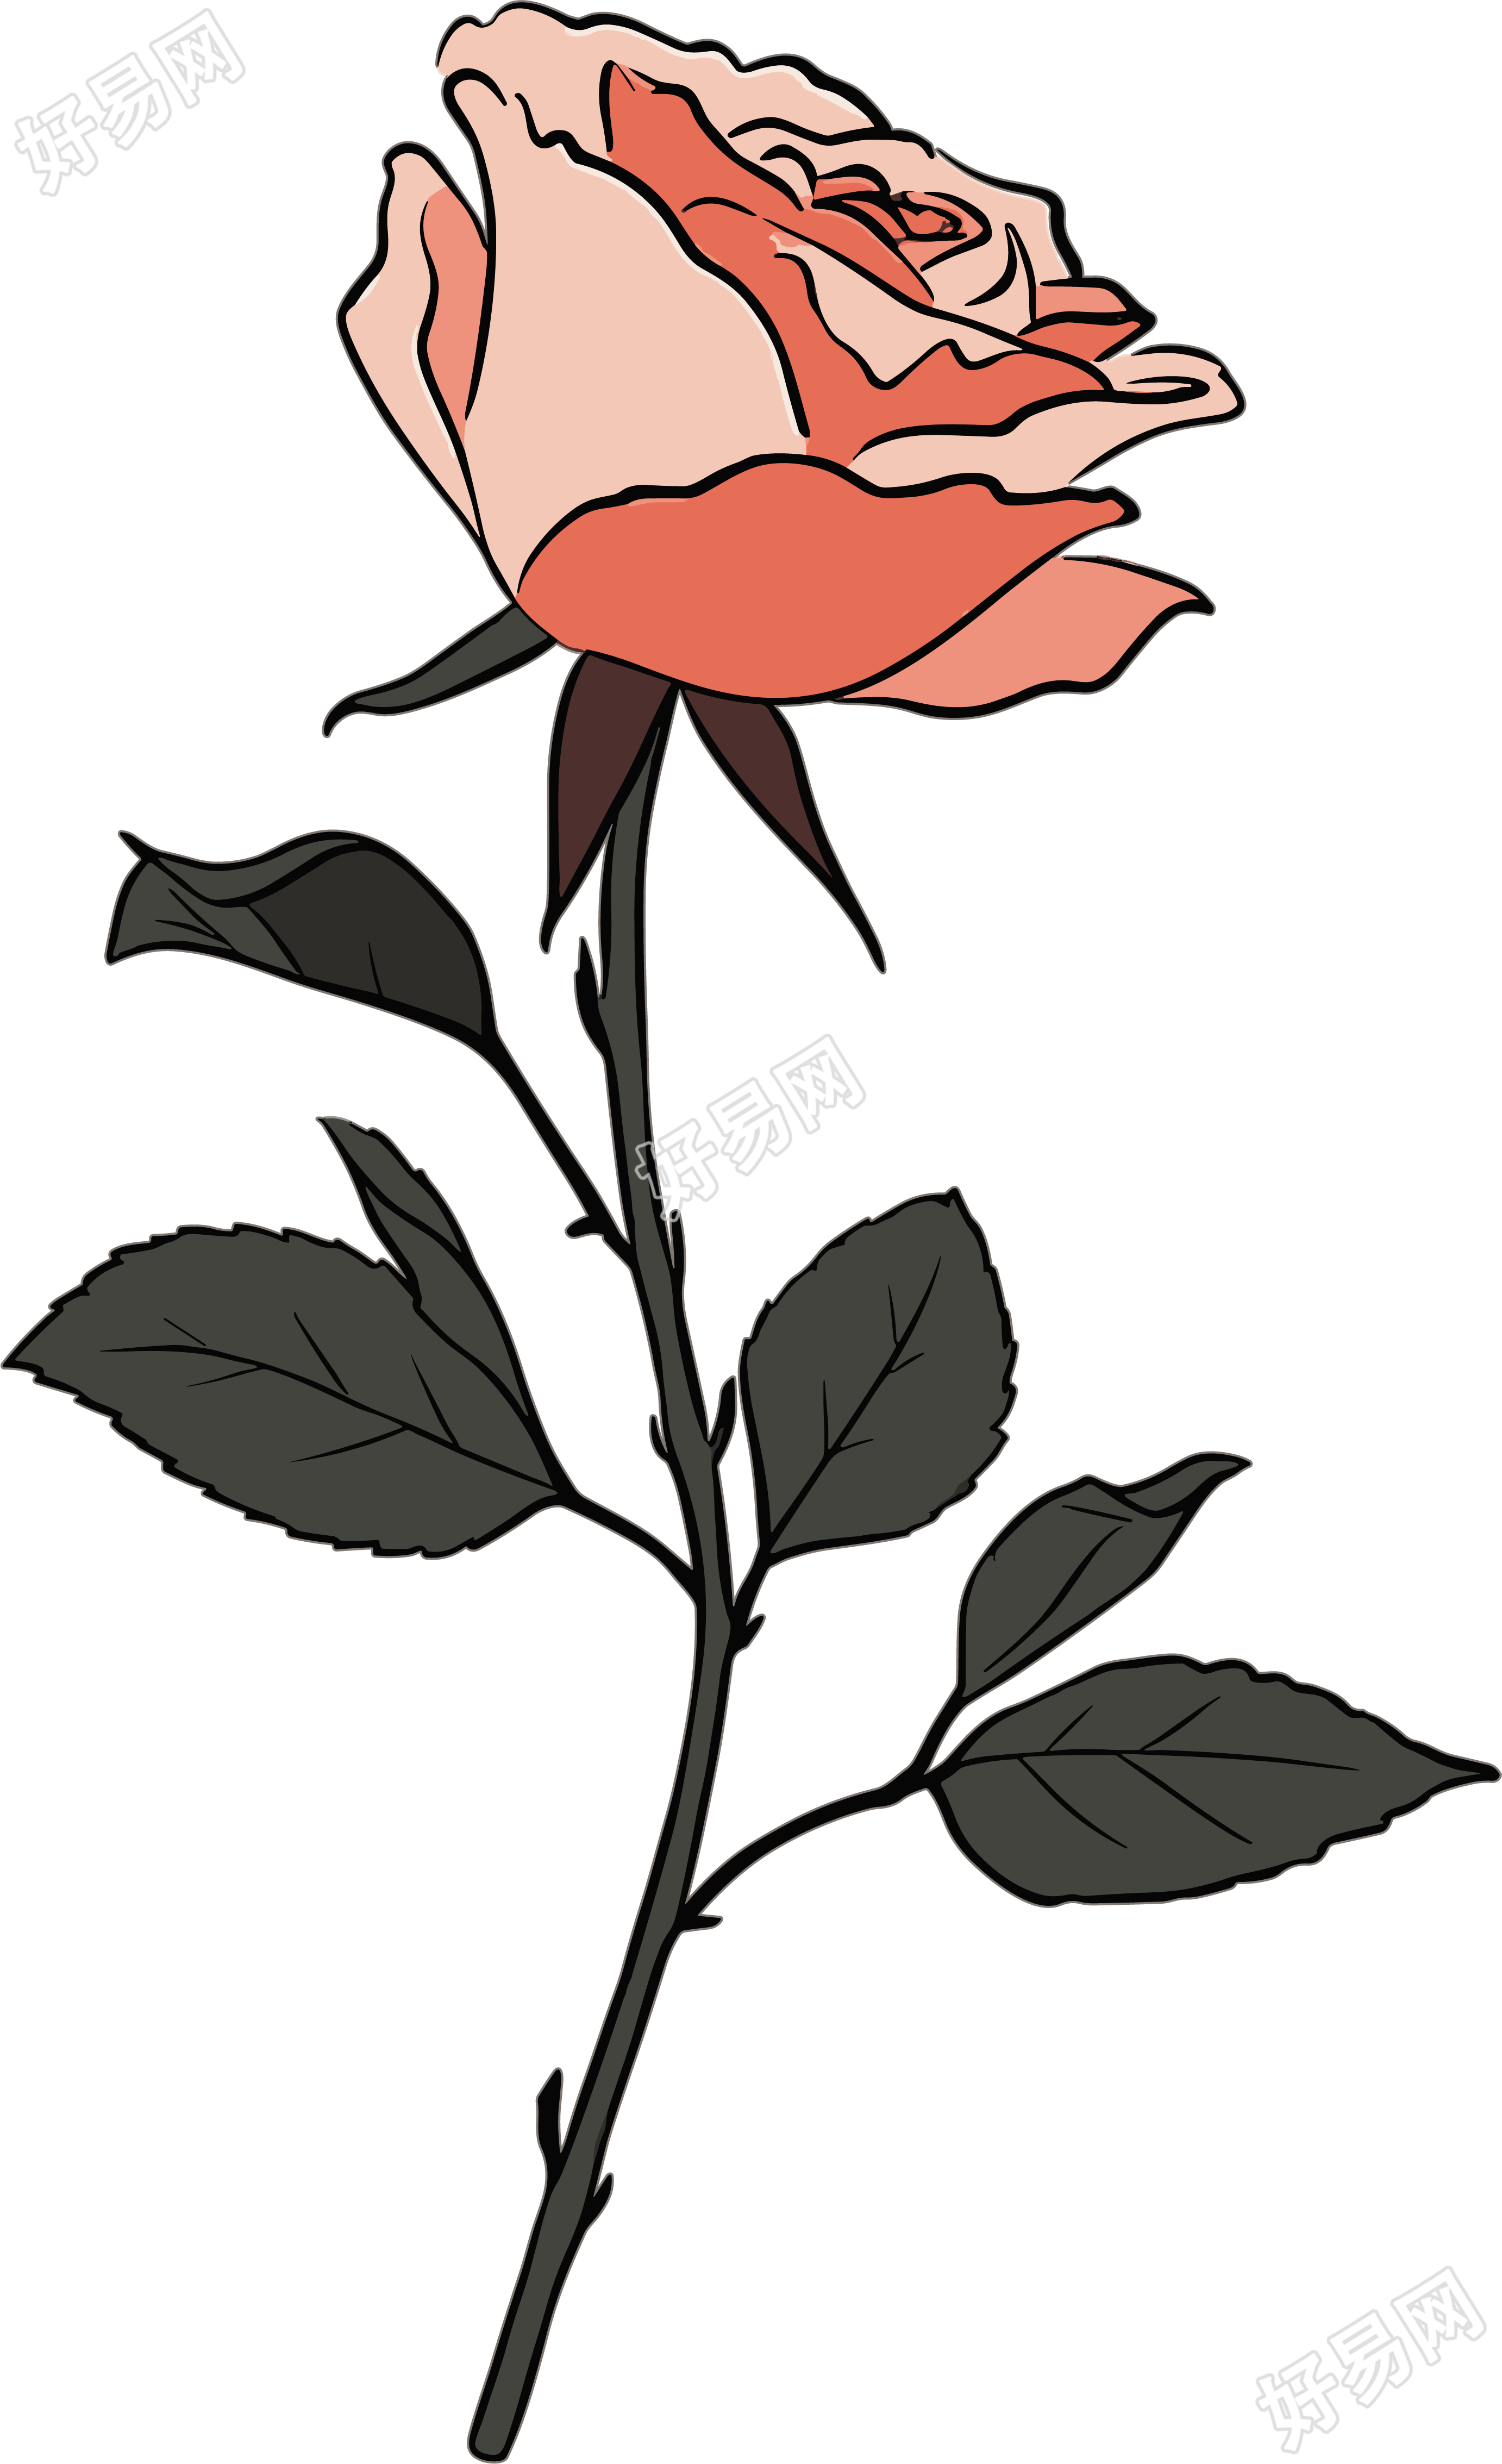 一朵玫瑰花图形设计元素